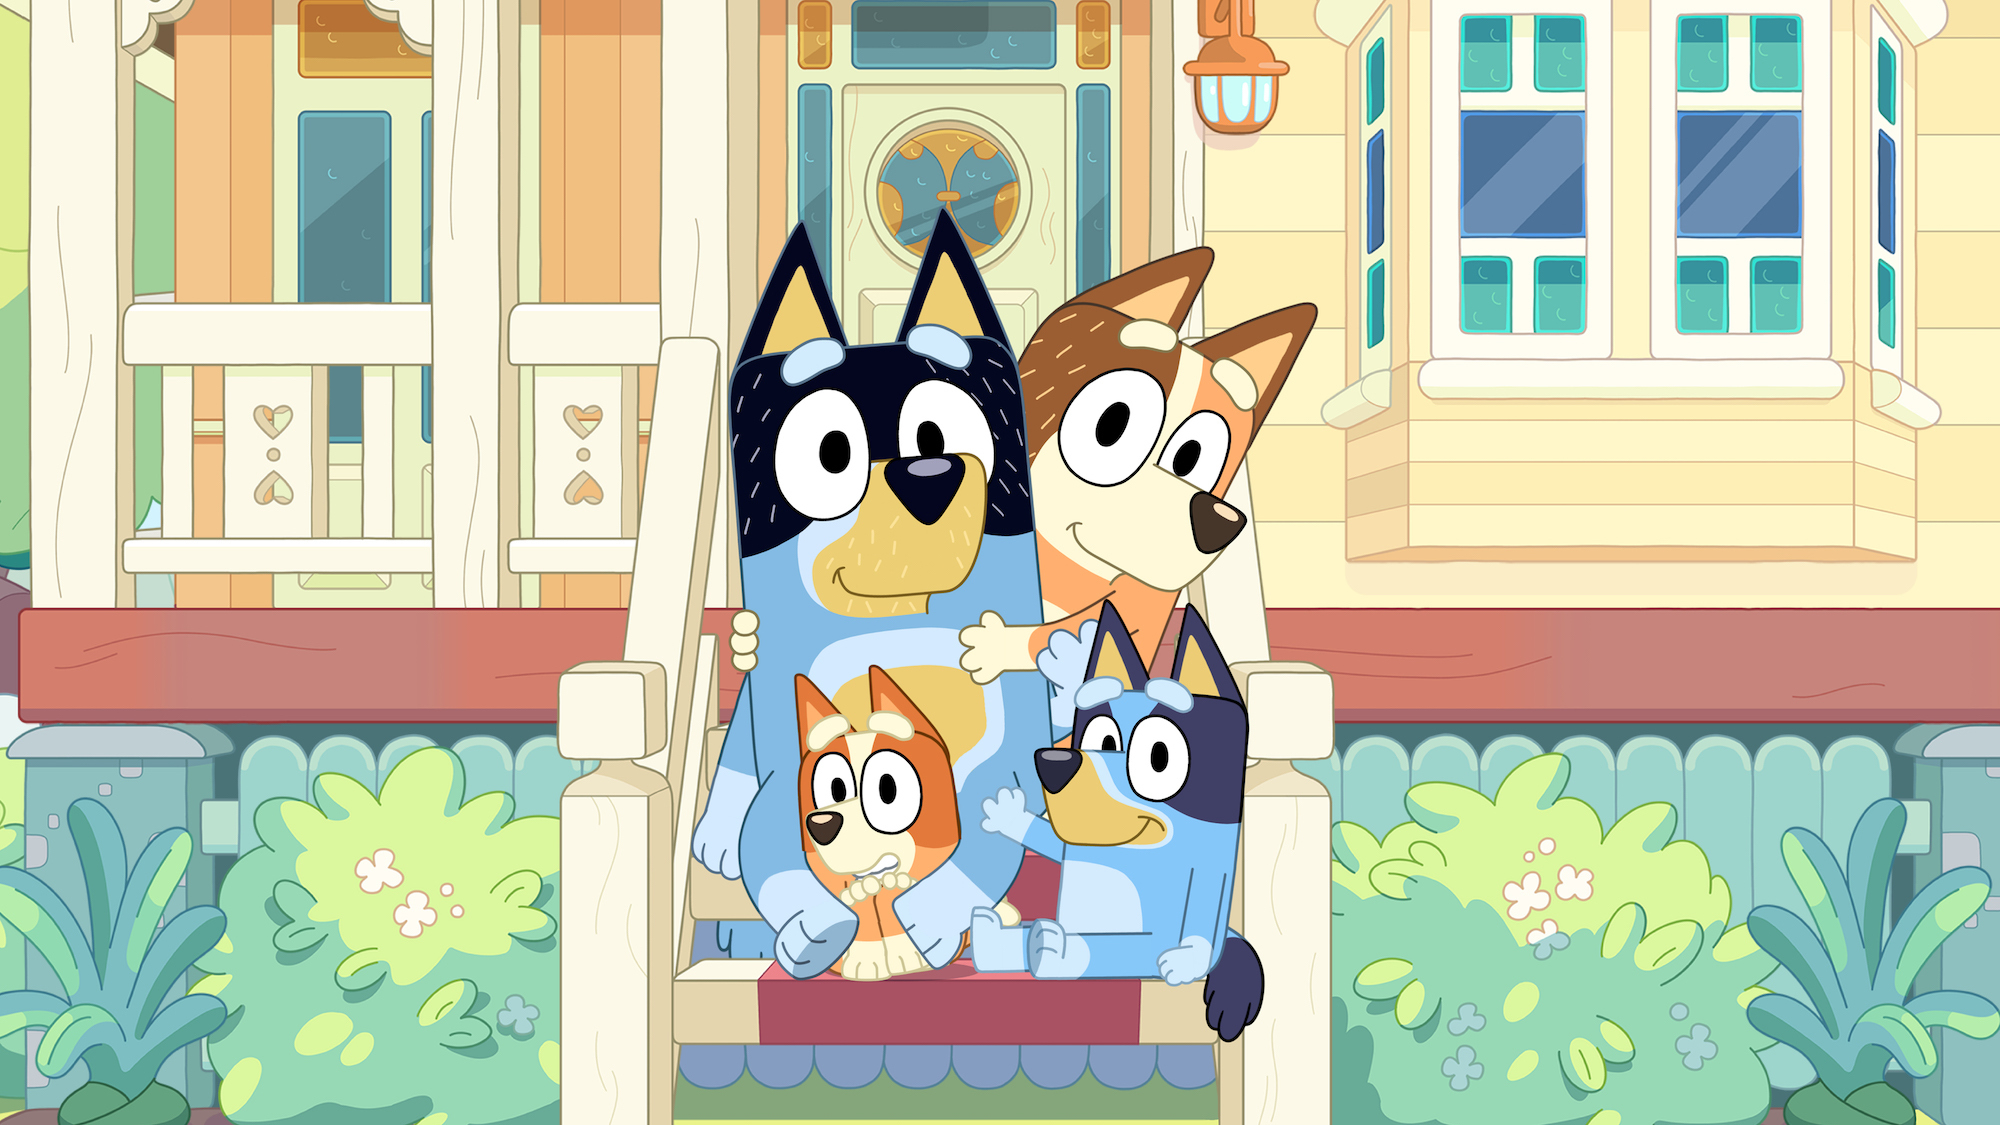 Die Familie von Bluey, einer australischen Zeichentrickserie, sitzt auf der Treppe vor der Haustür und winken in die Kamera